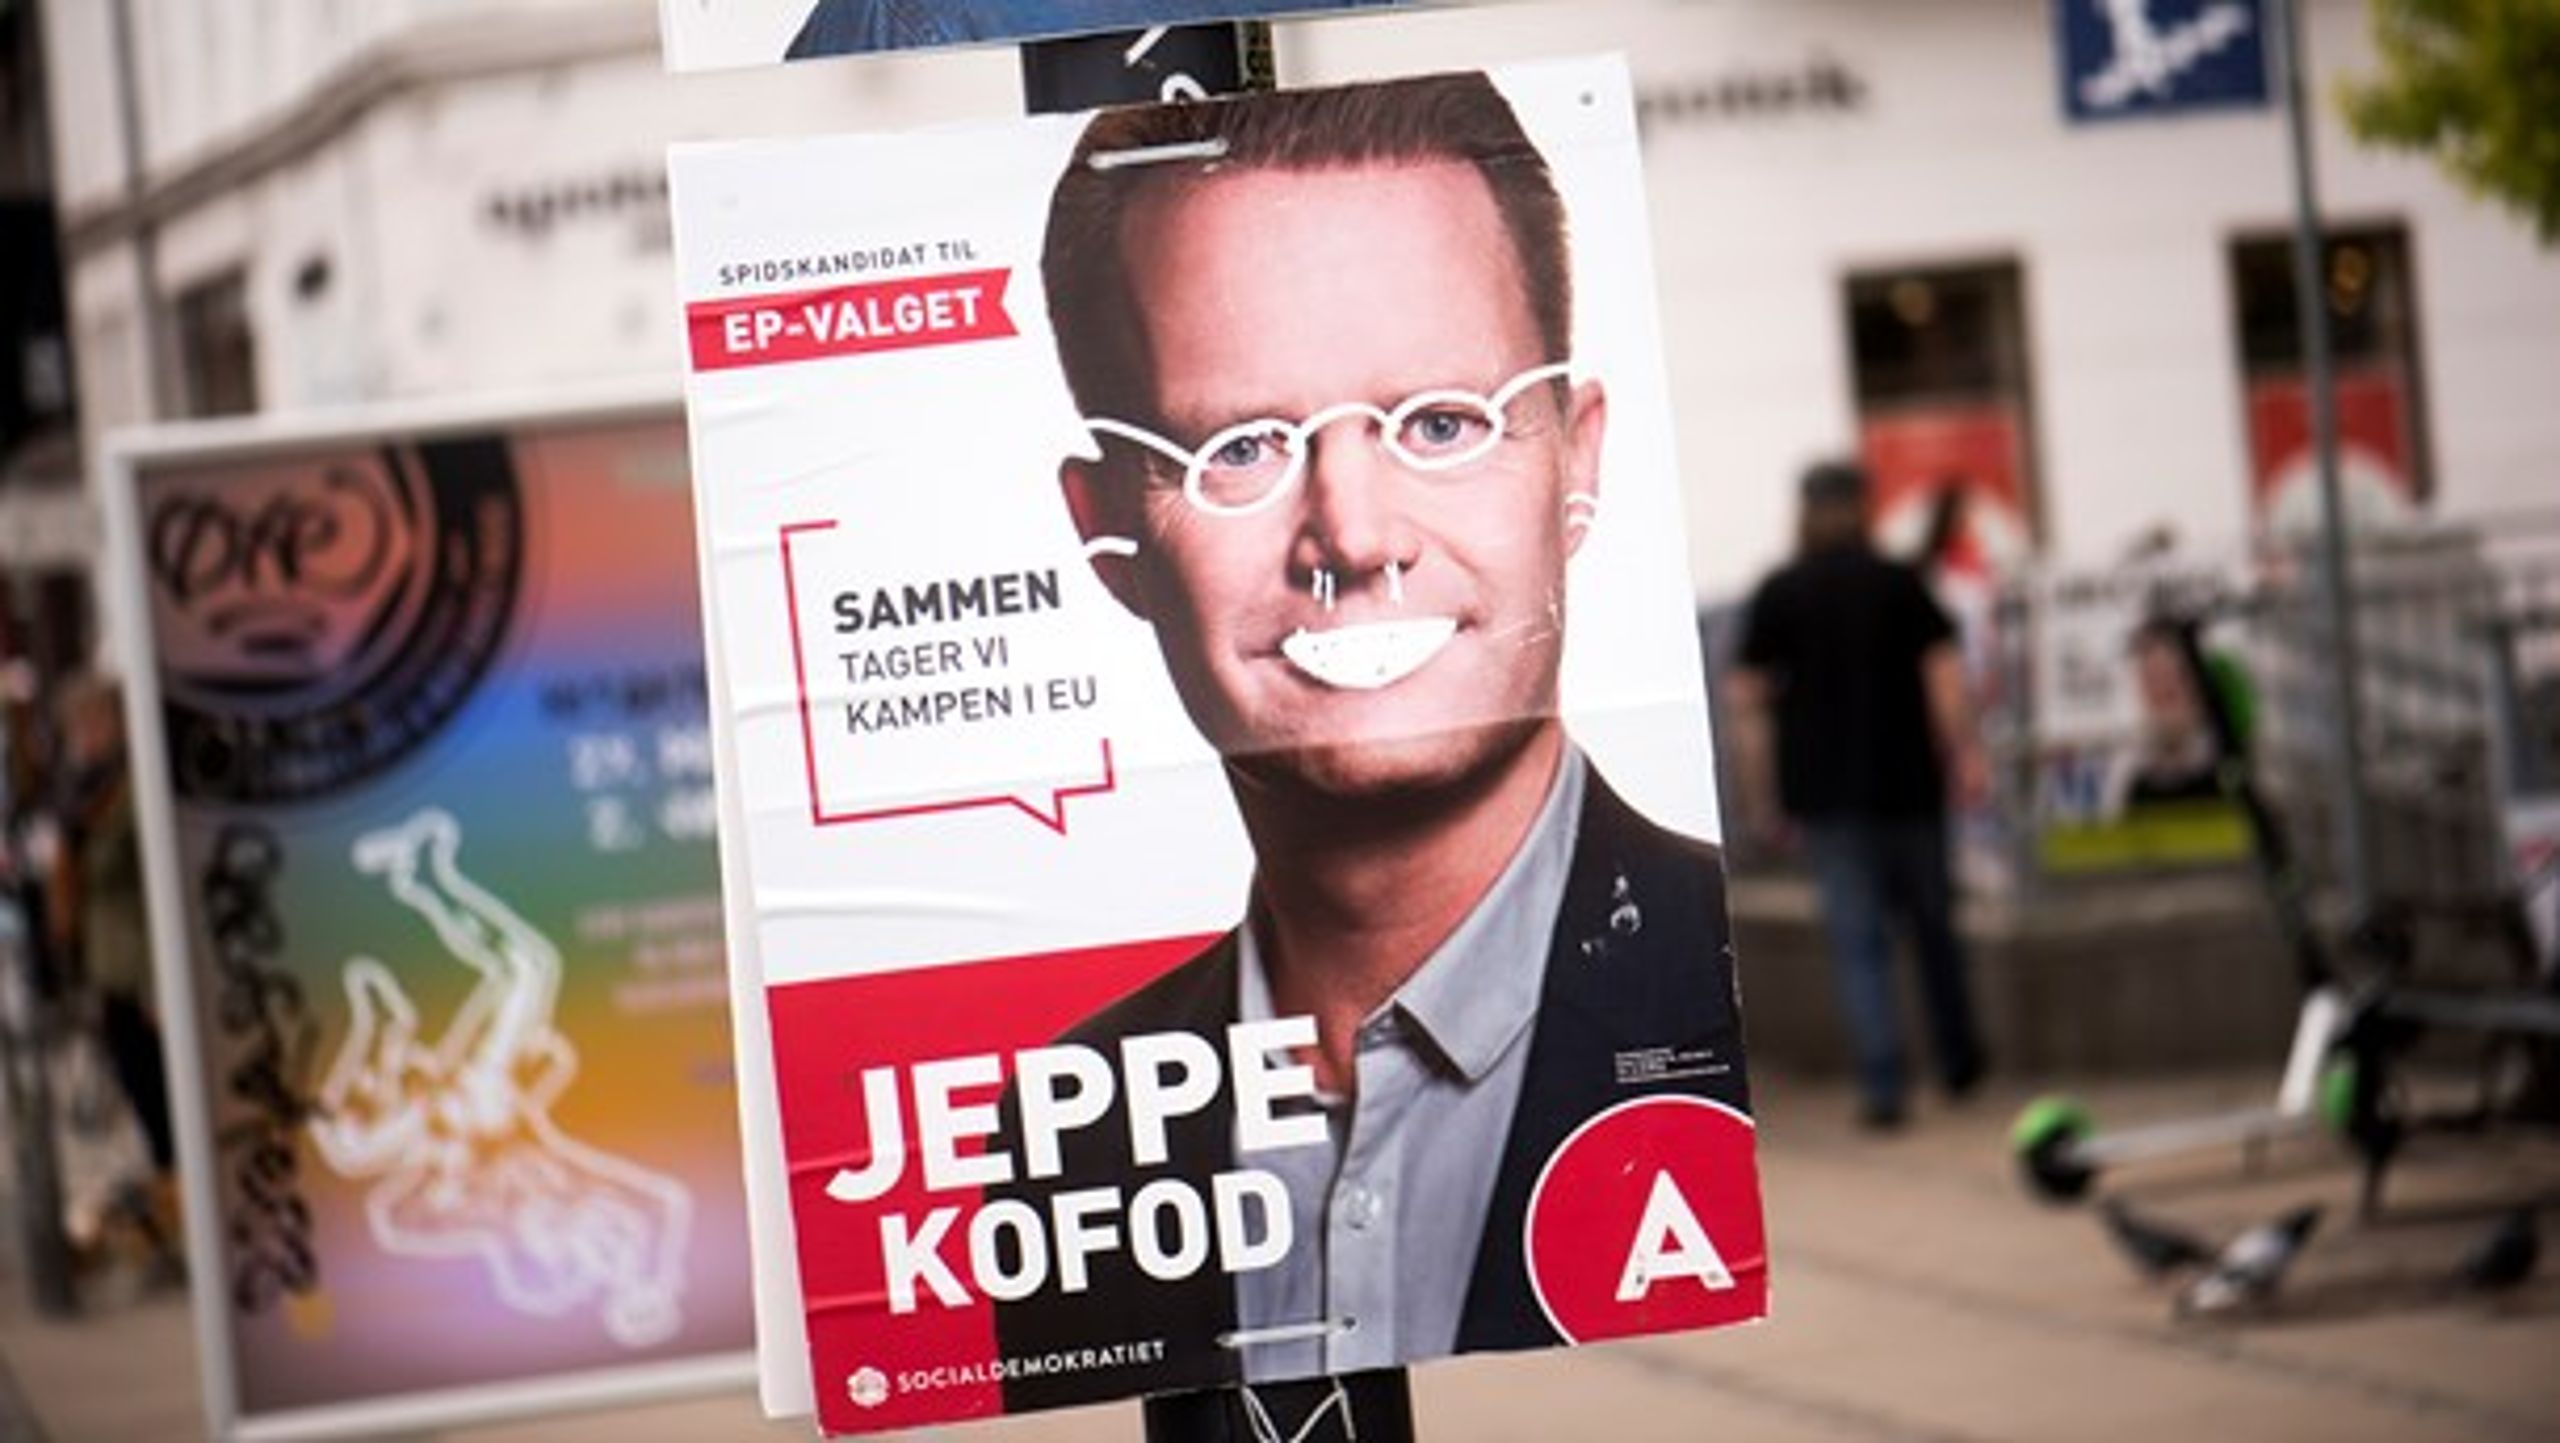 52 procent af folketingskandidaterne oplevede hærværk af valgplakater under valgkampen. Her er det gået ud over Jeppe Kofod, der stillede op til EP-valget.